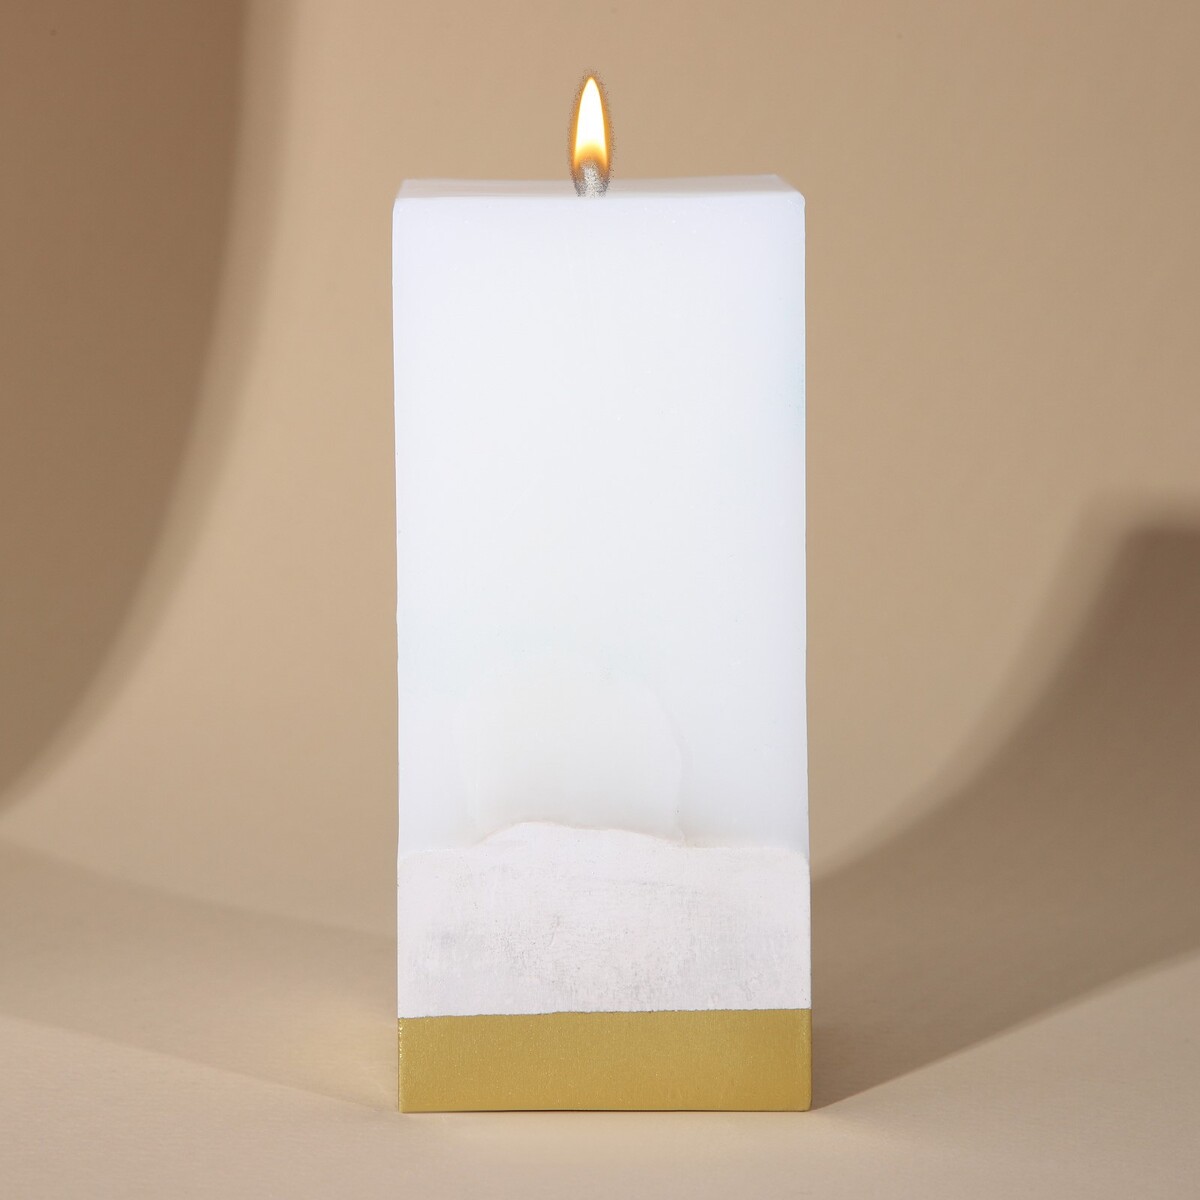 Свеча интерьерная белая с бетоном, низ золото, 6 х 6 х 14 см свеча интерьерная белая с бетоном 5 х 5 х17 см